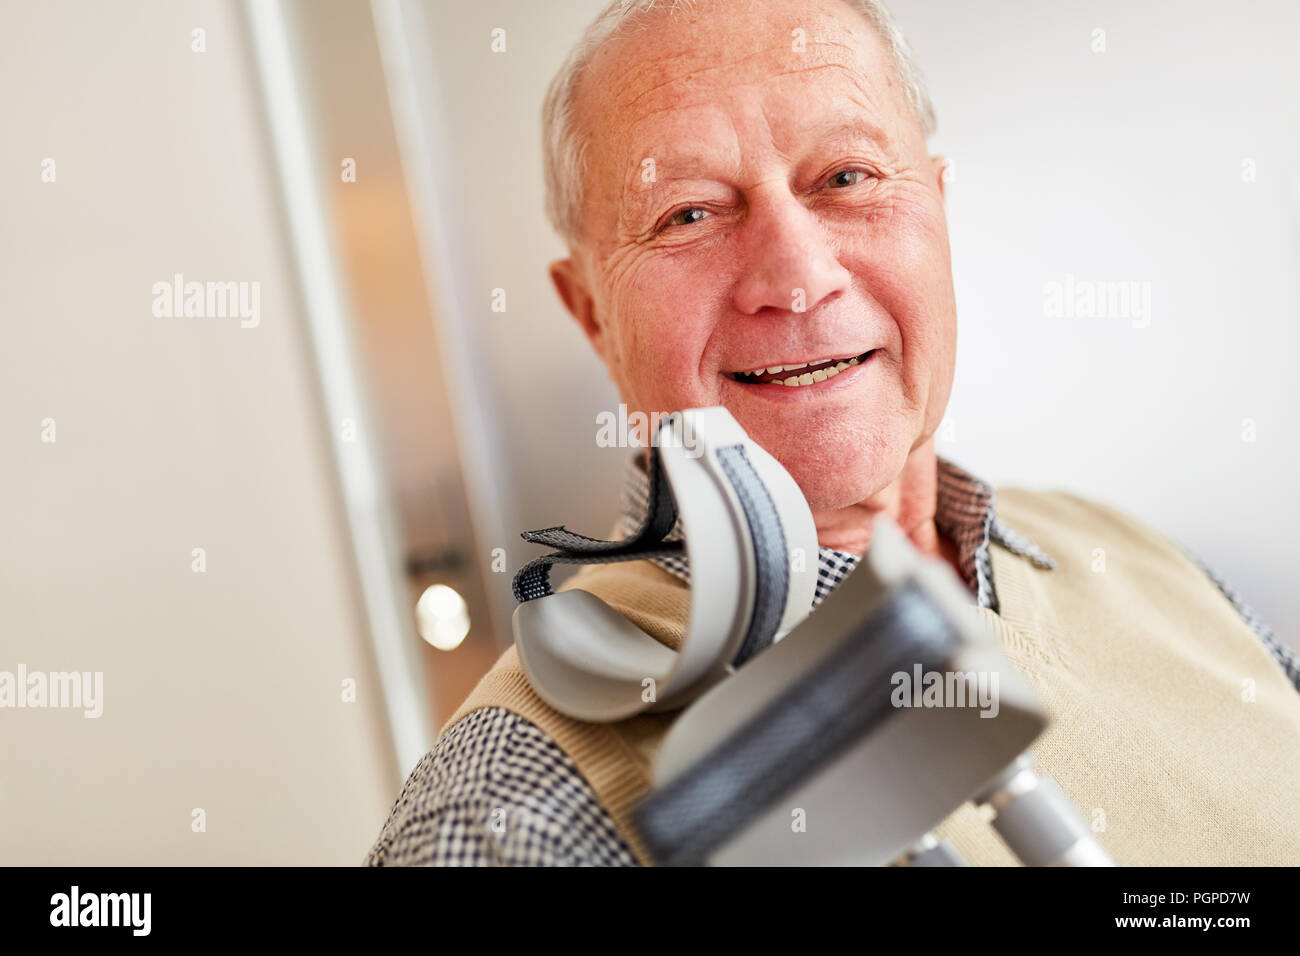 Lächelnd älterer Mann mit Krücken in der Reha Klinik oder Seniorenheim Stockfoto